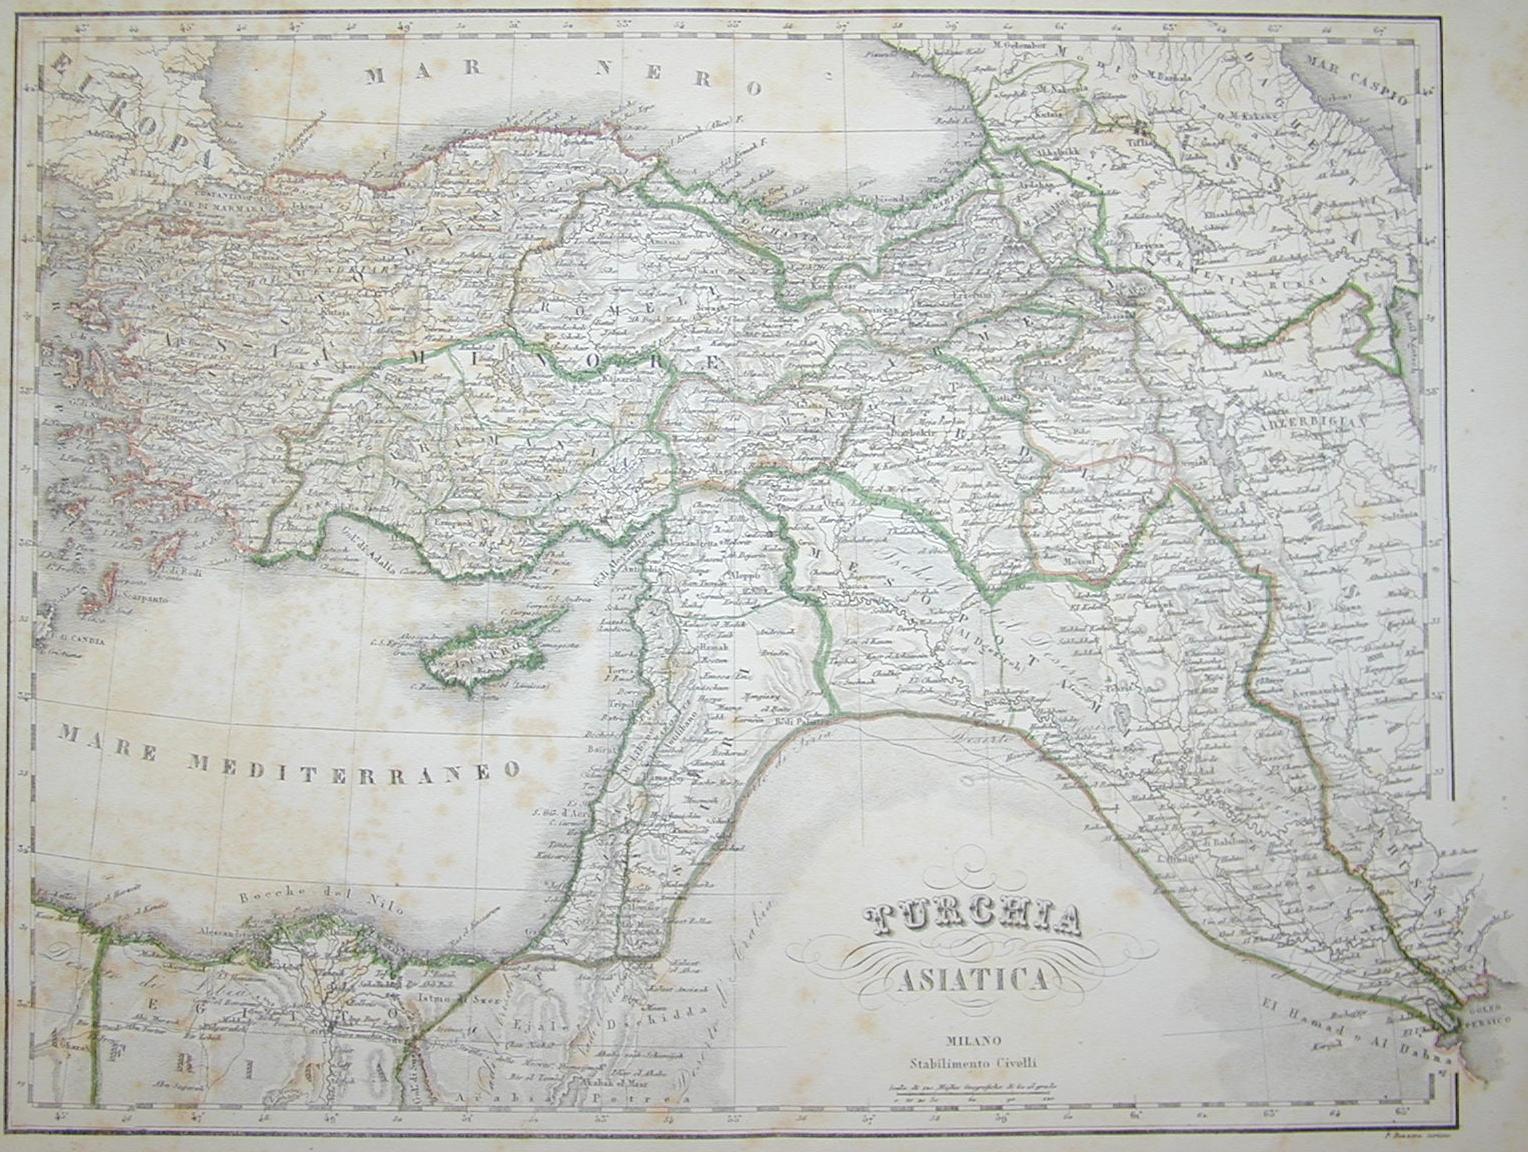 Turchia, Asia Minore e Cipro 1850 ca.